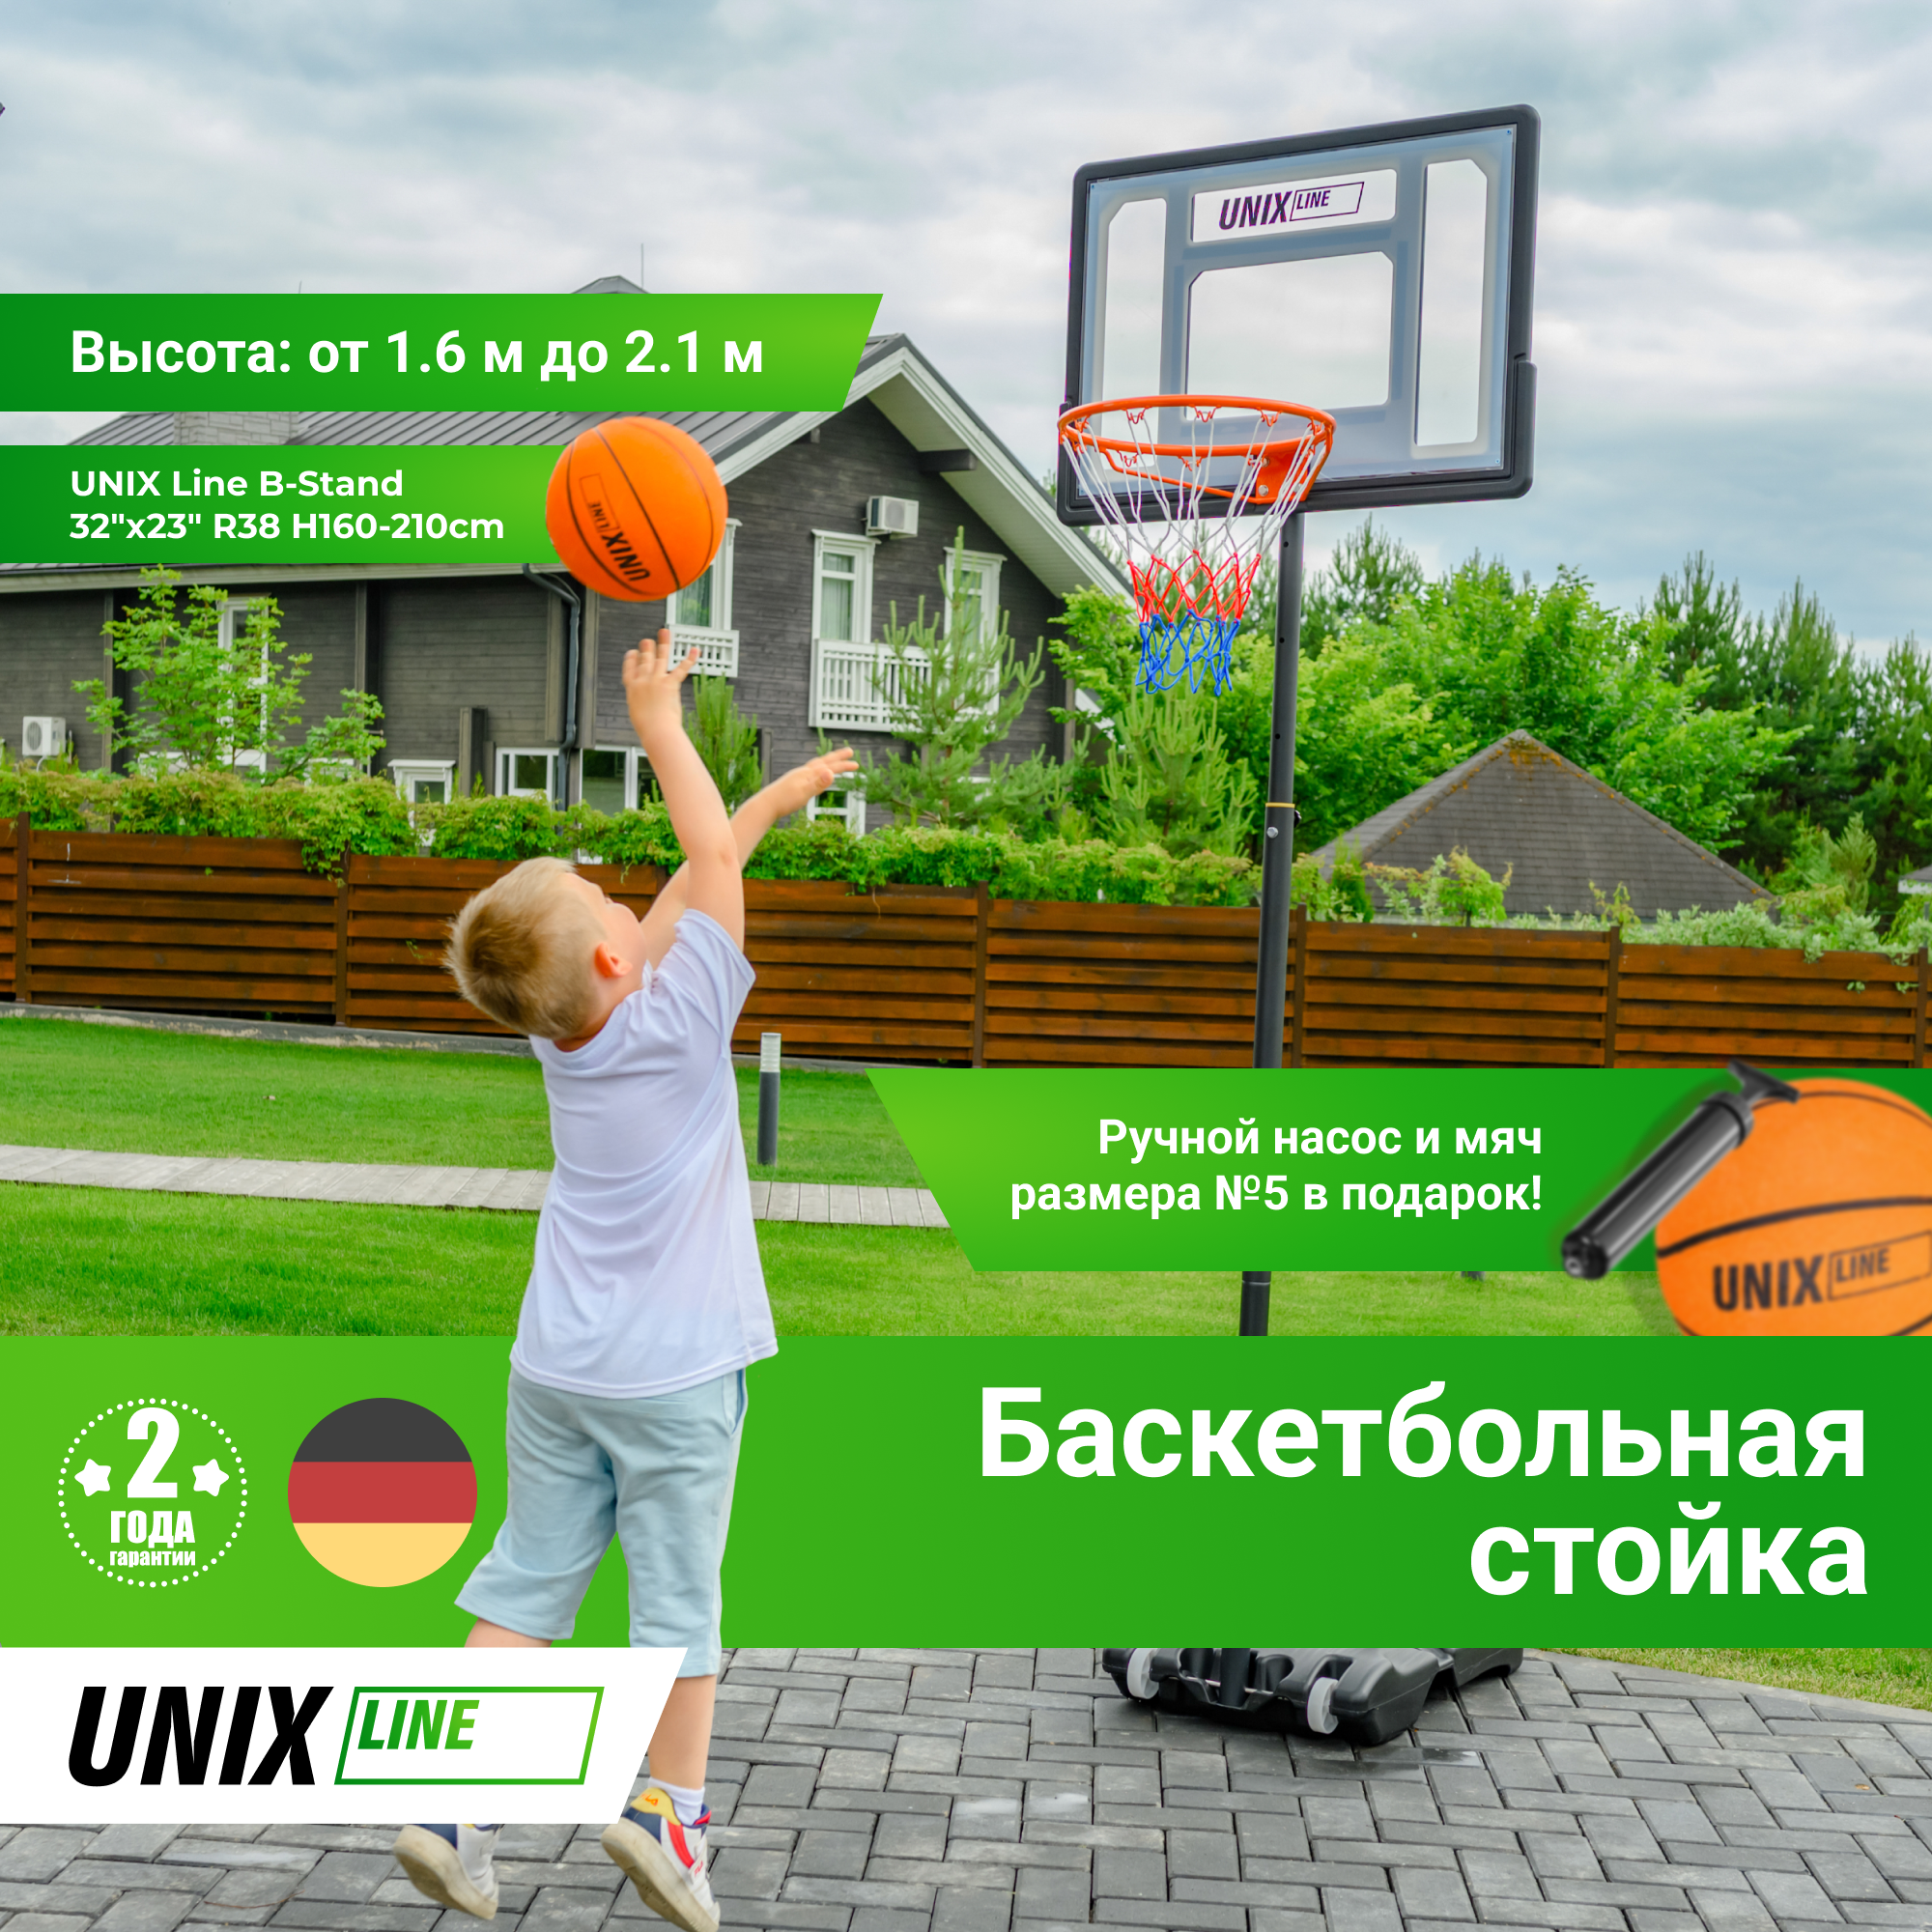 Баскетбольная стойка UNIX Line B-Stand 32"x23" R38 H160-210cm - 3 